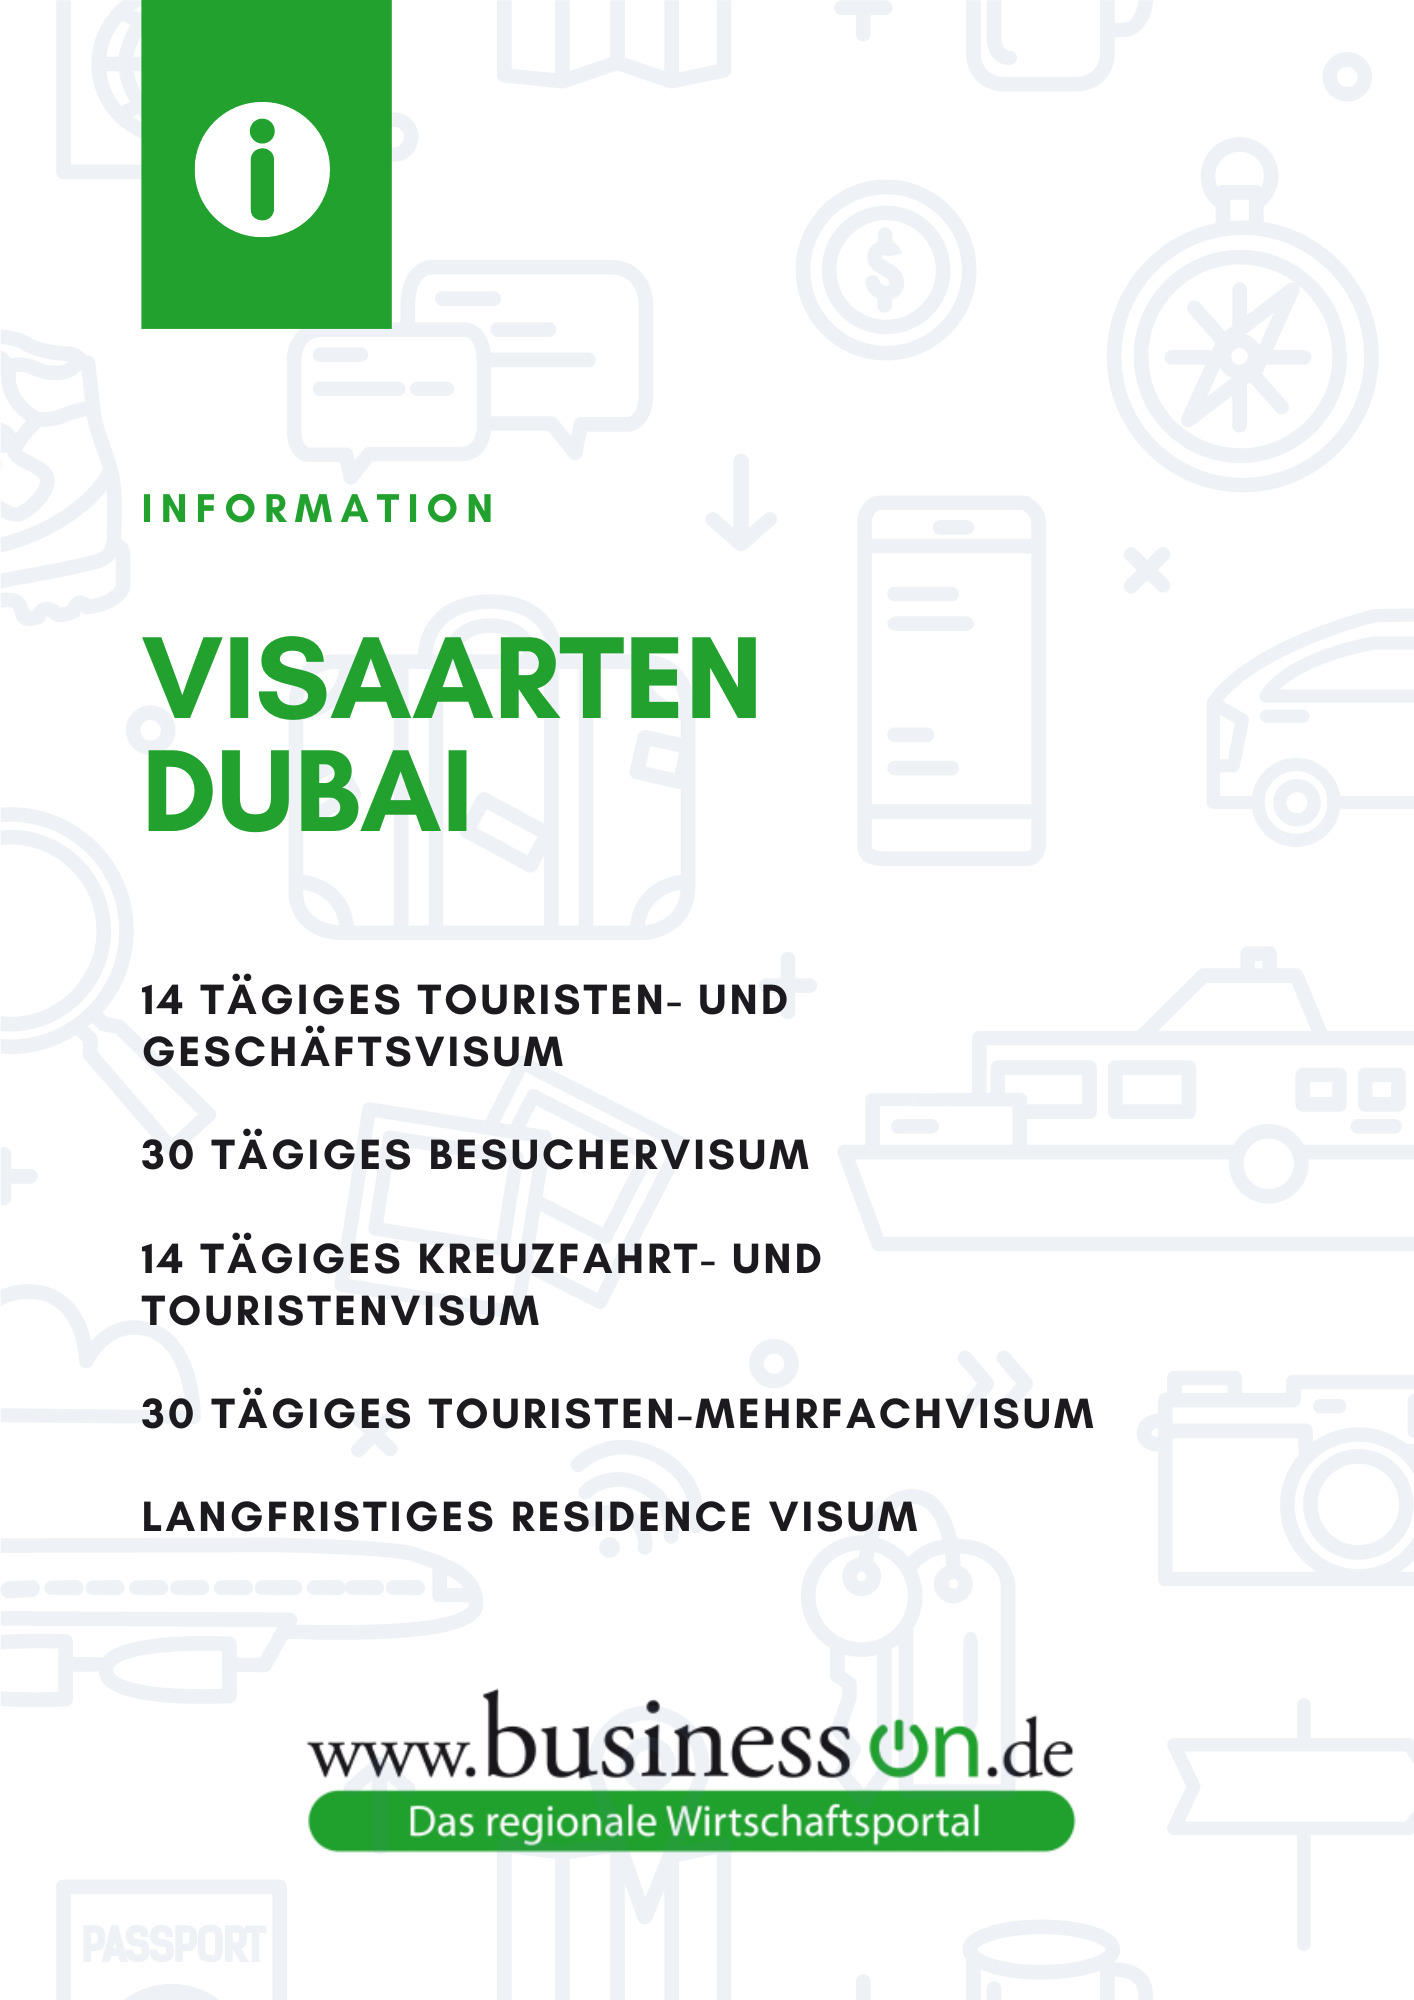 Visaarten Dubai